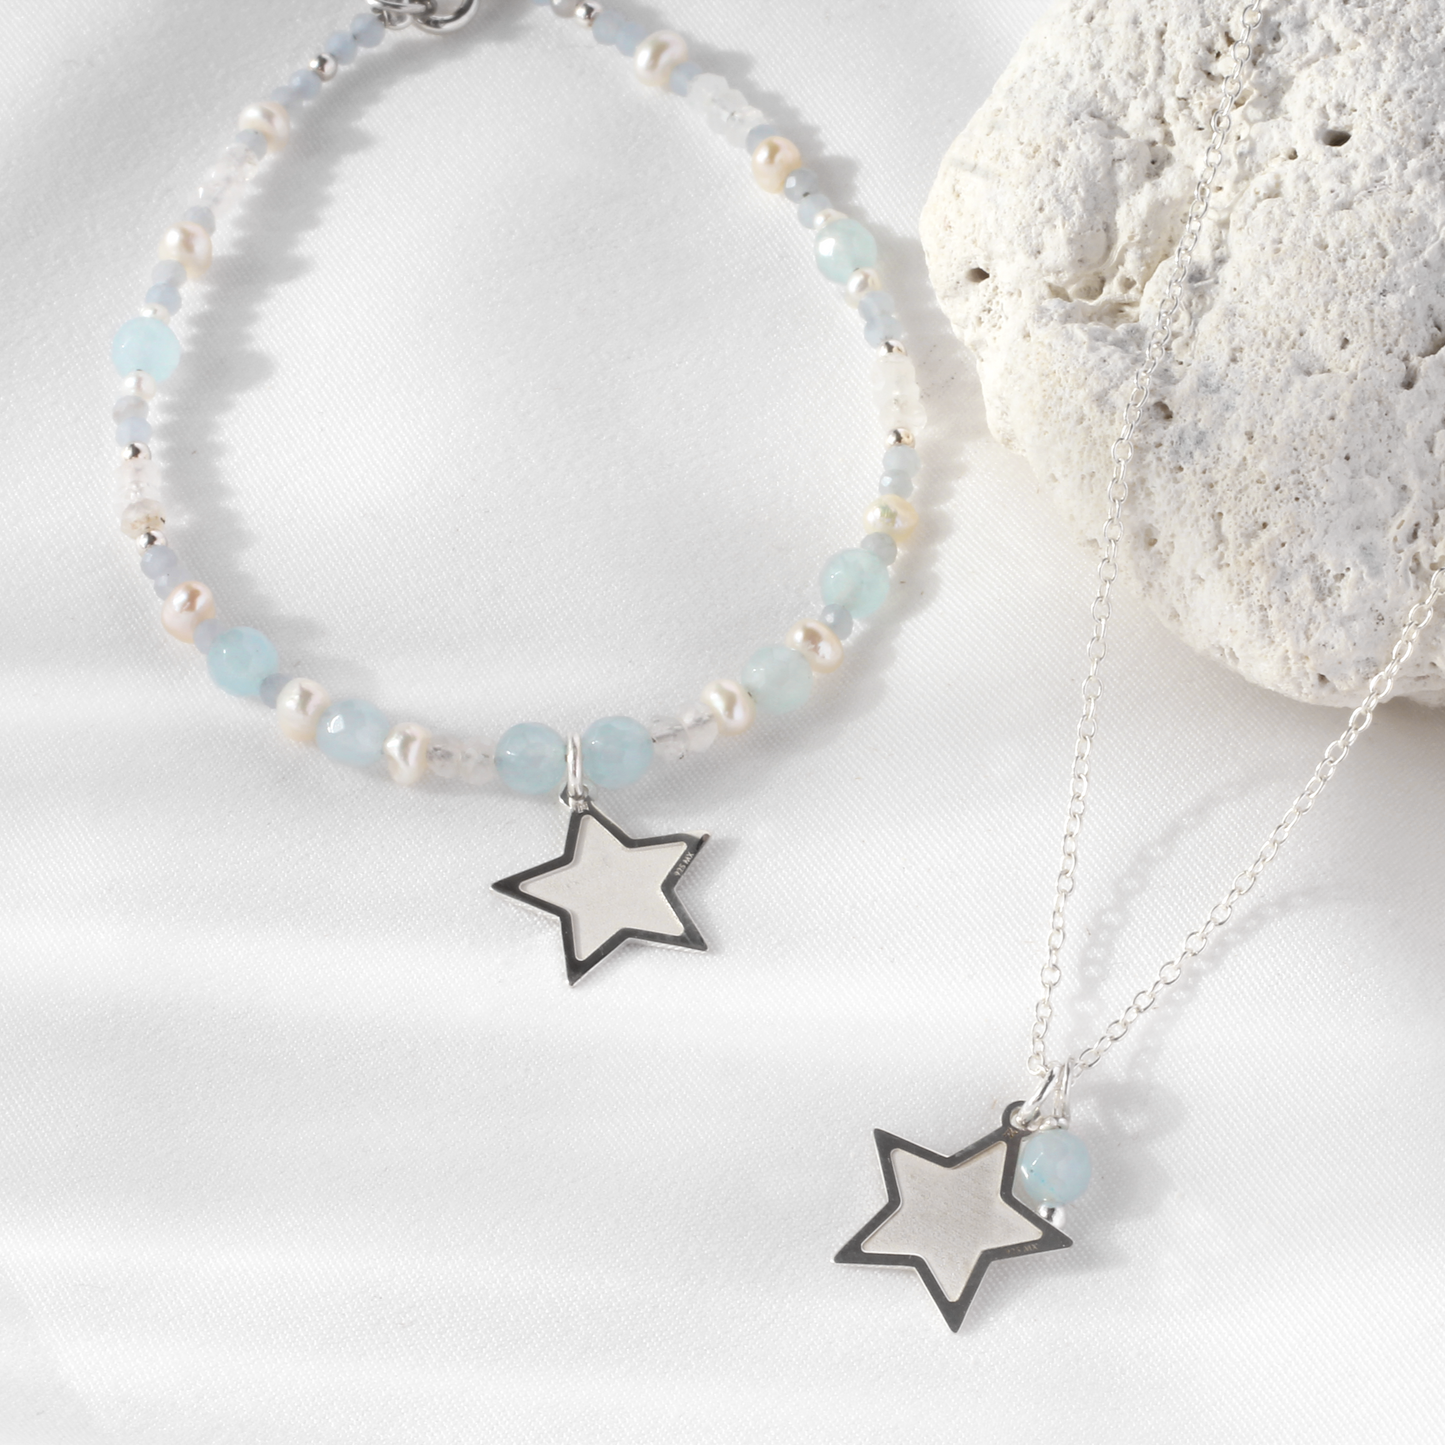 Pulsera Suerte Estrella con piedras y perlas